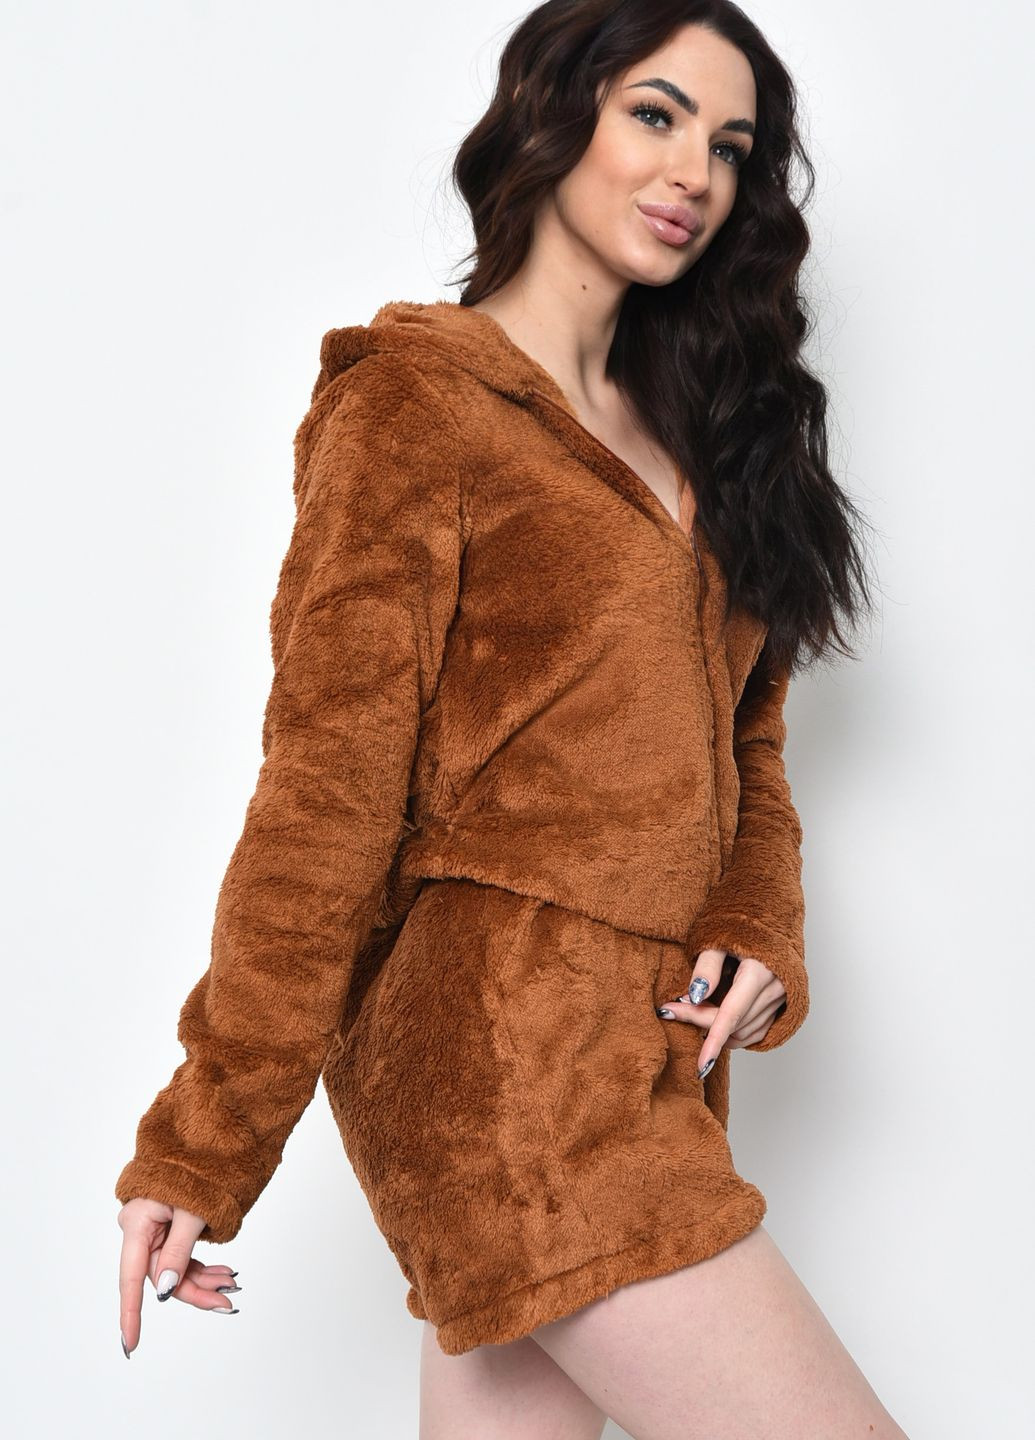 Коричневая зимняя пижама-комбинезон женская коричневого цвета комбинезон Let's Shop